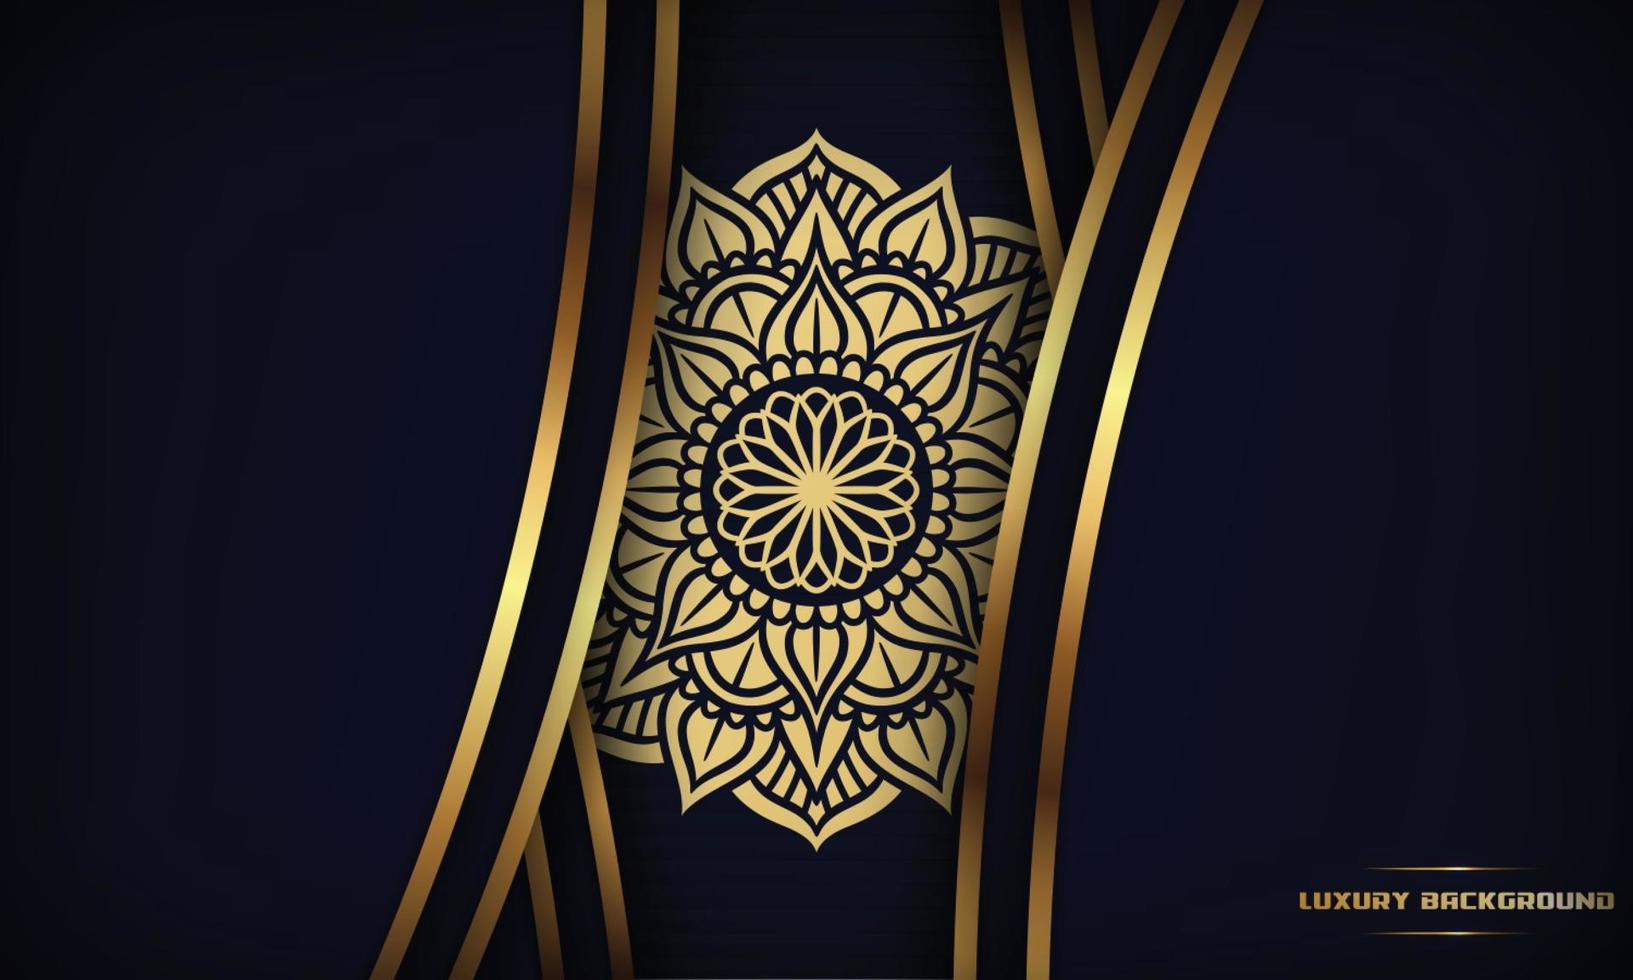 conception de mandala ornemental de luxe fond bleu foncé avec ligne dorée brillante vecteur